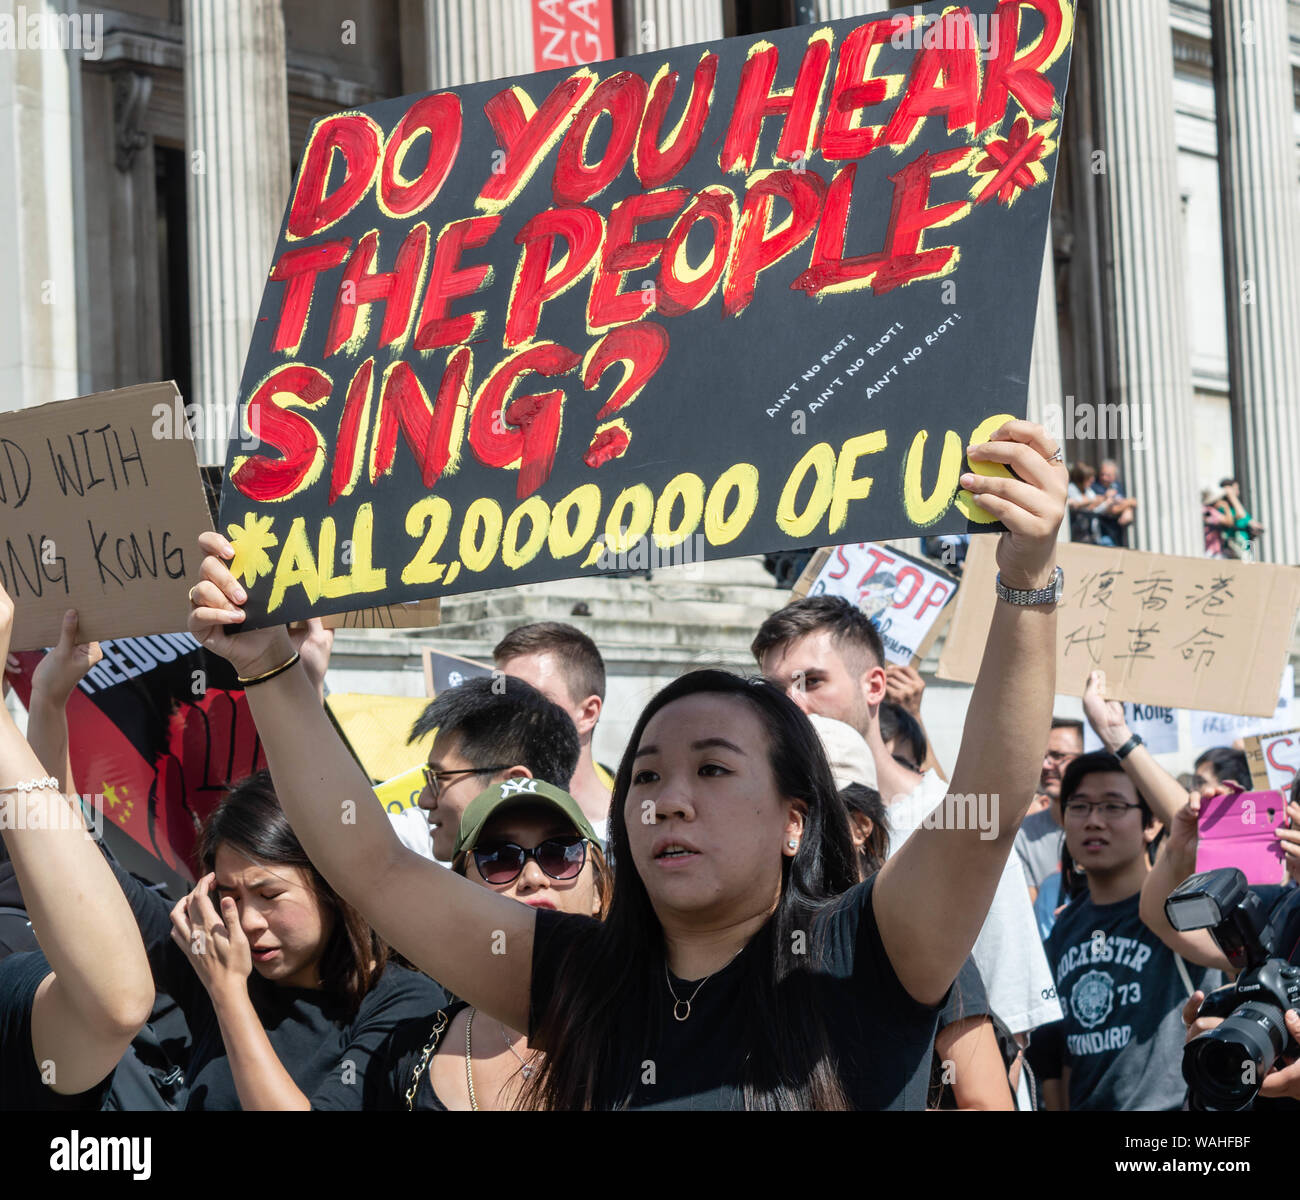 Londres, Reino Unido - 17 de agosto, 2019: Mujer sosteniendo una pancarta en apoyo de Hong Kong en el Reino Unido solidaridad con Hong Kong Rally. Foto de stock